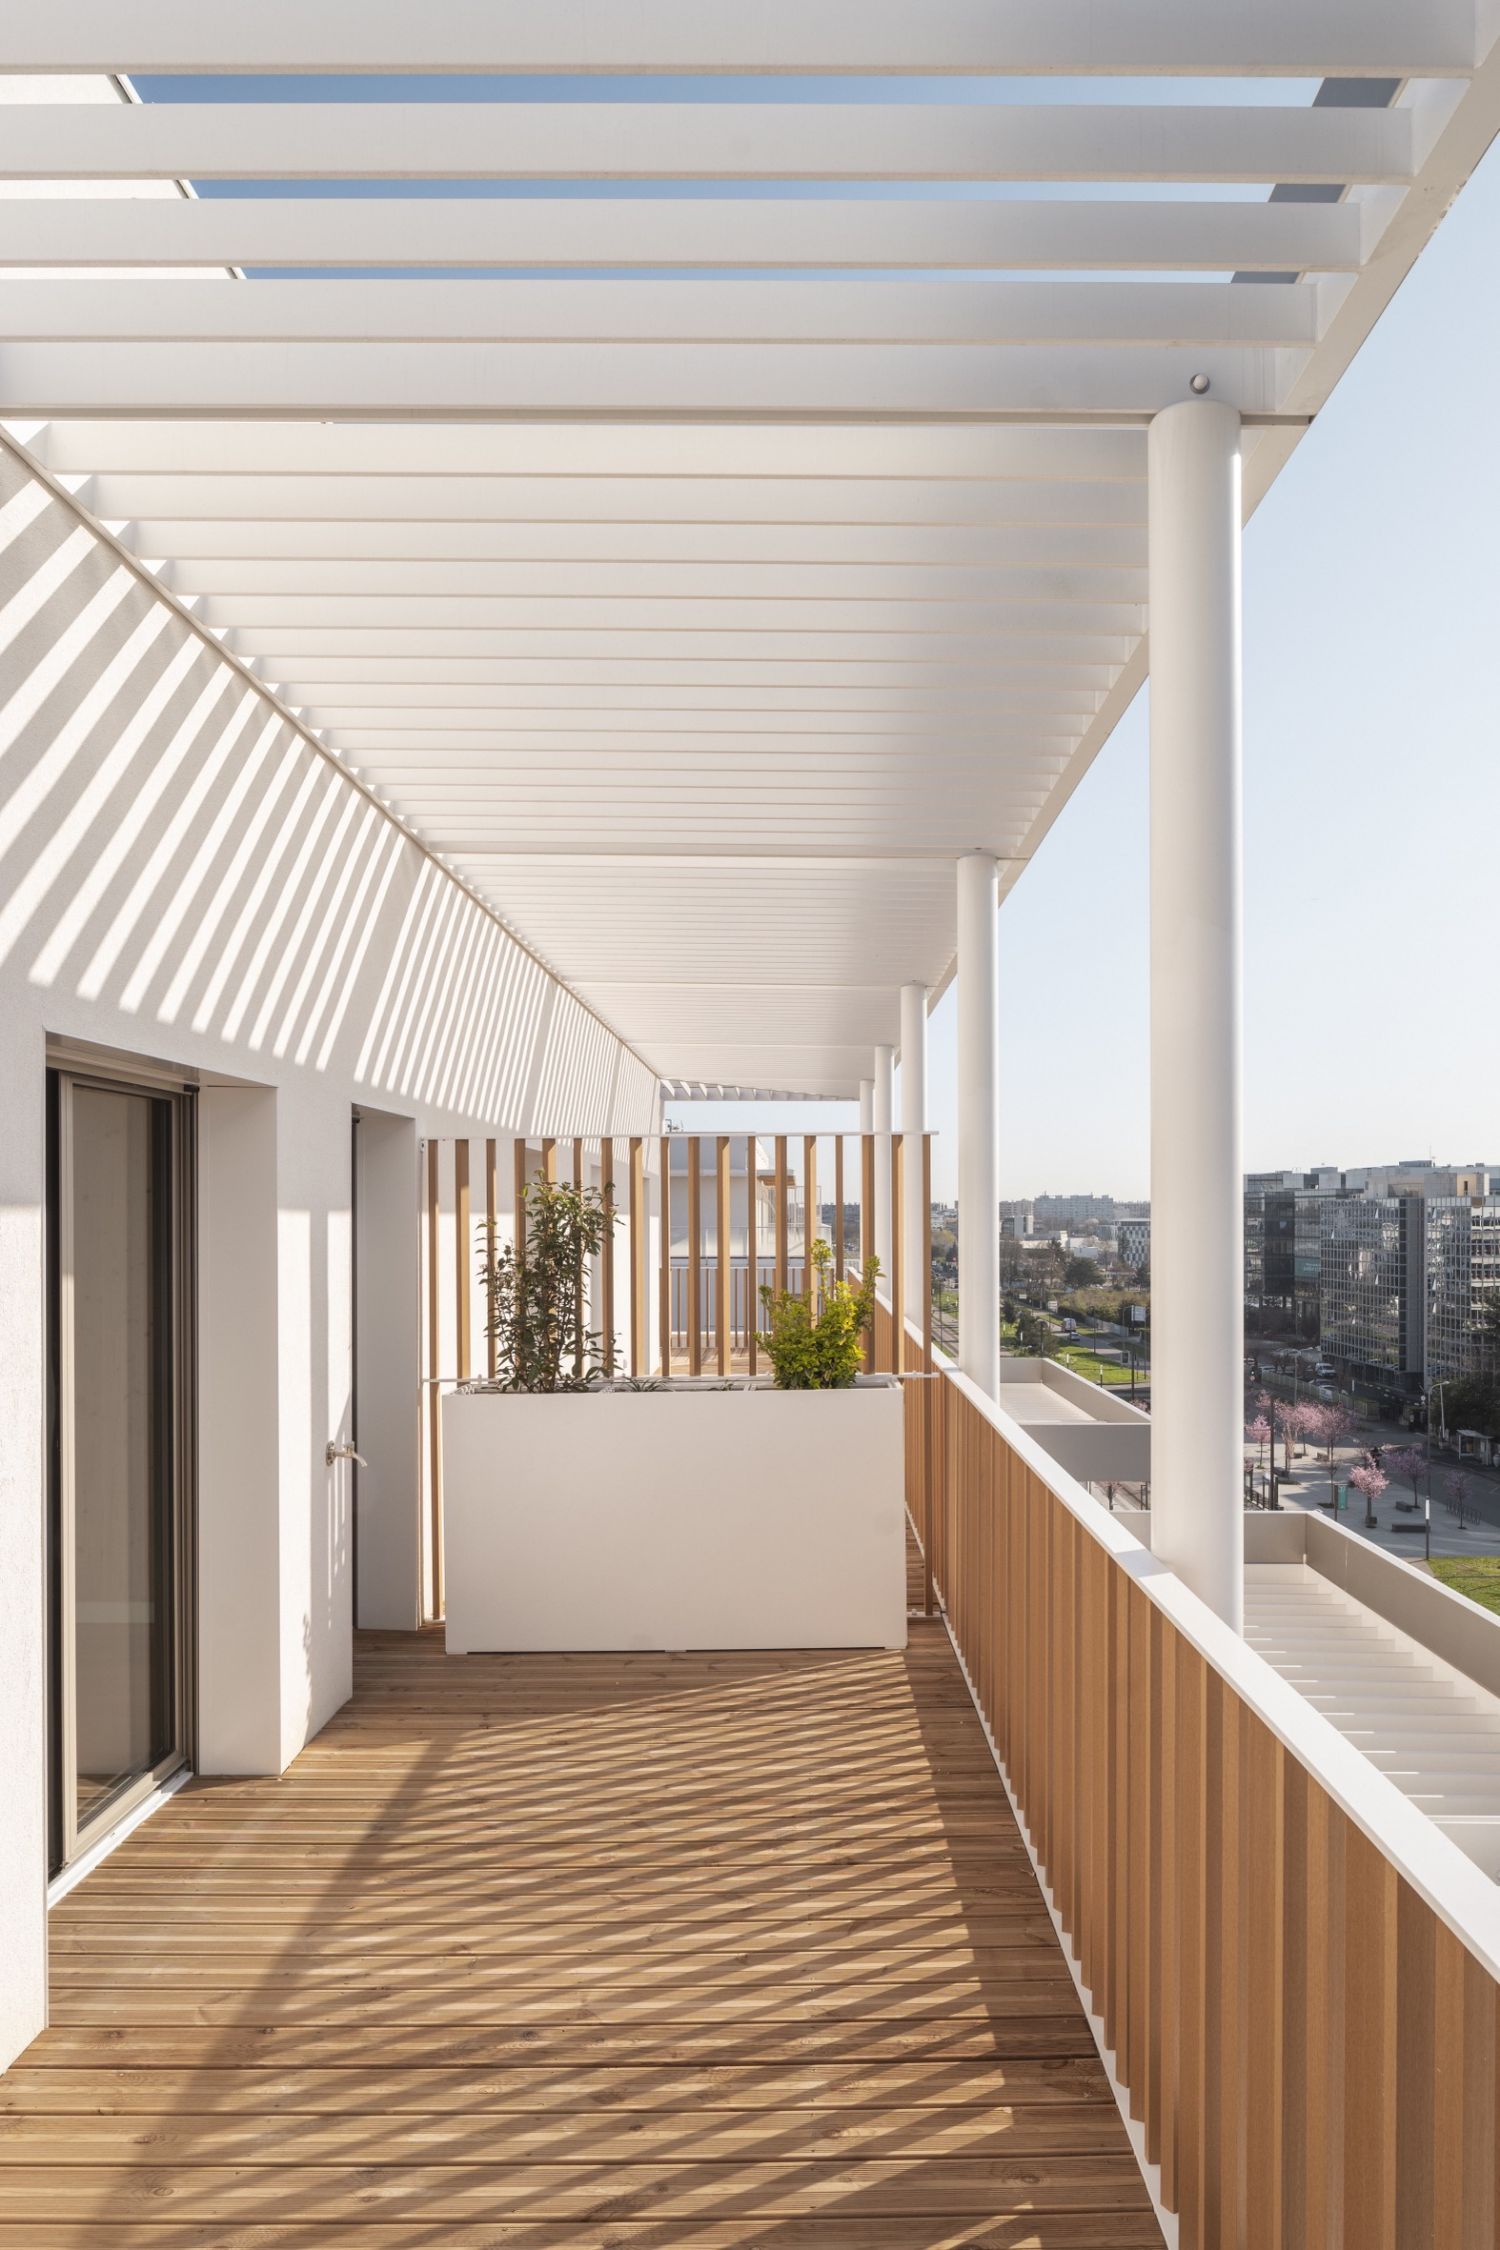 Résidence de 92 logements collectifs en bois à Vélizy - Arch : DREAM et Nicolas Laisné © Cyrille Weiner